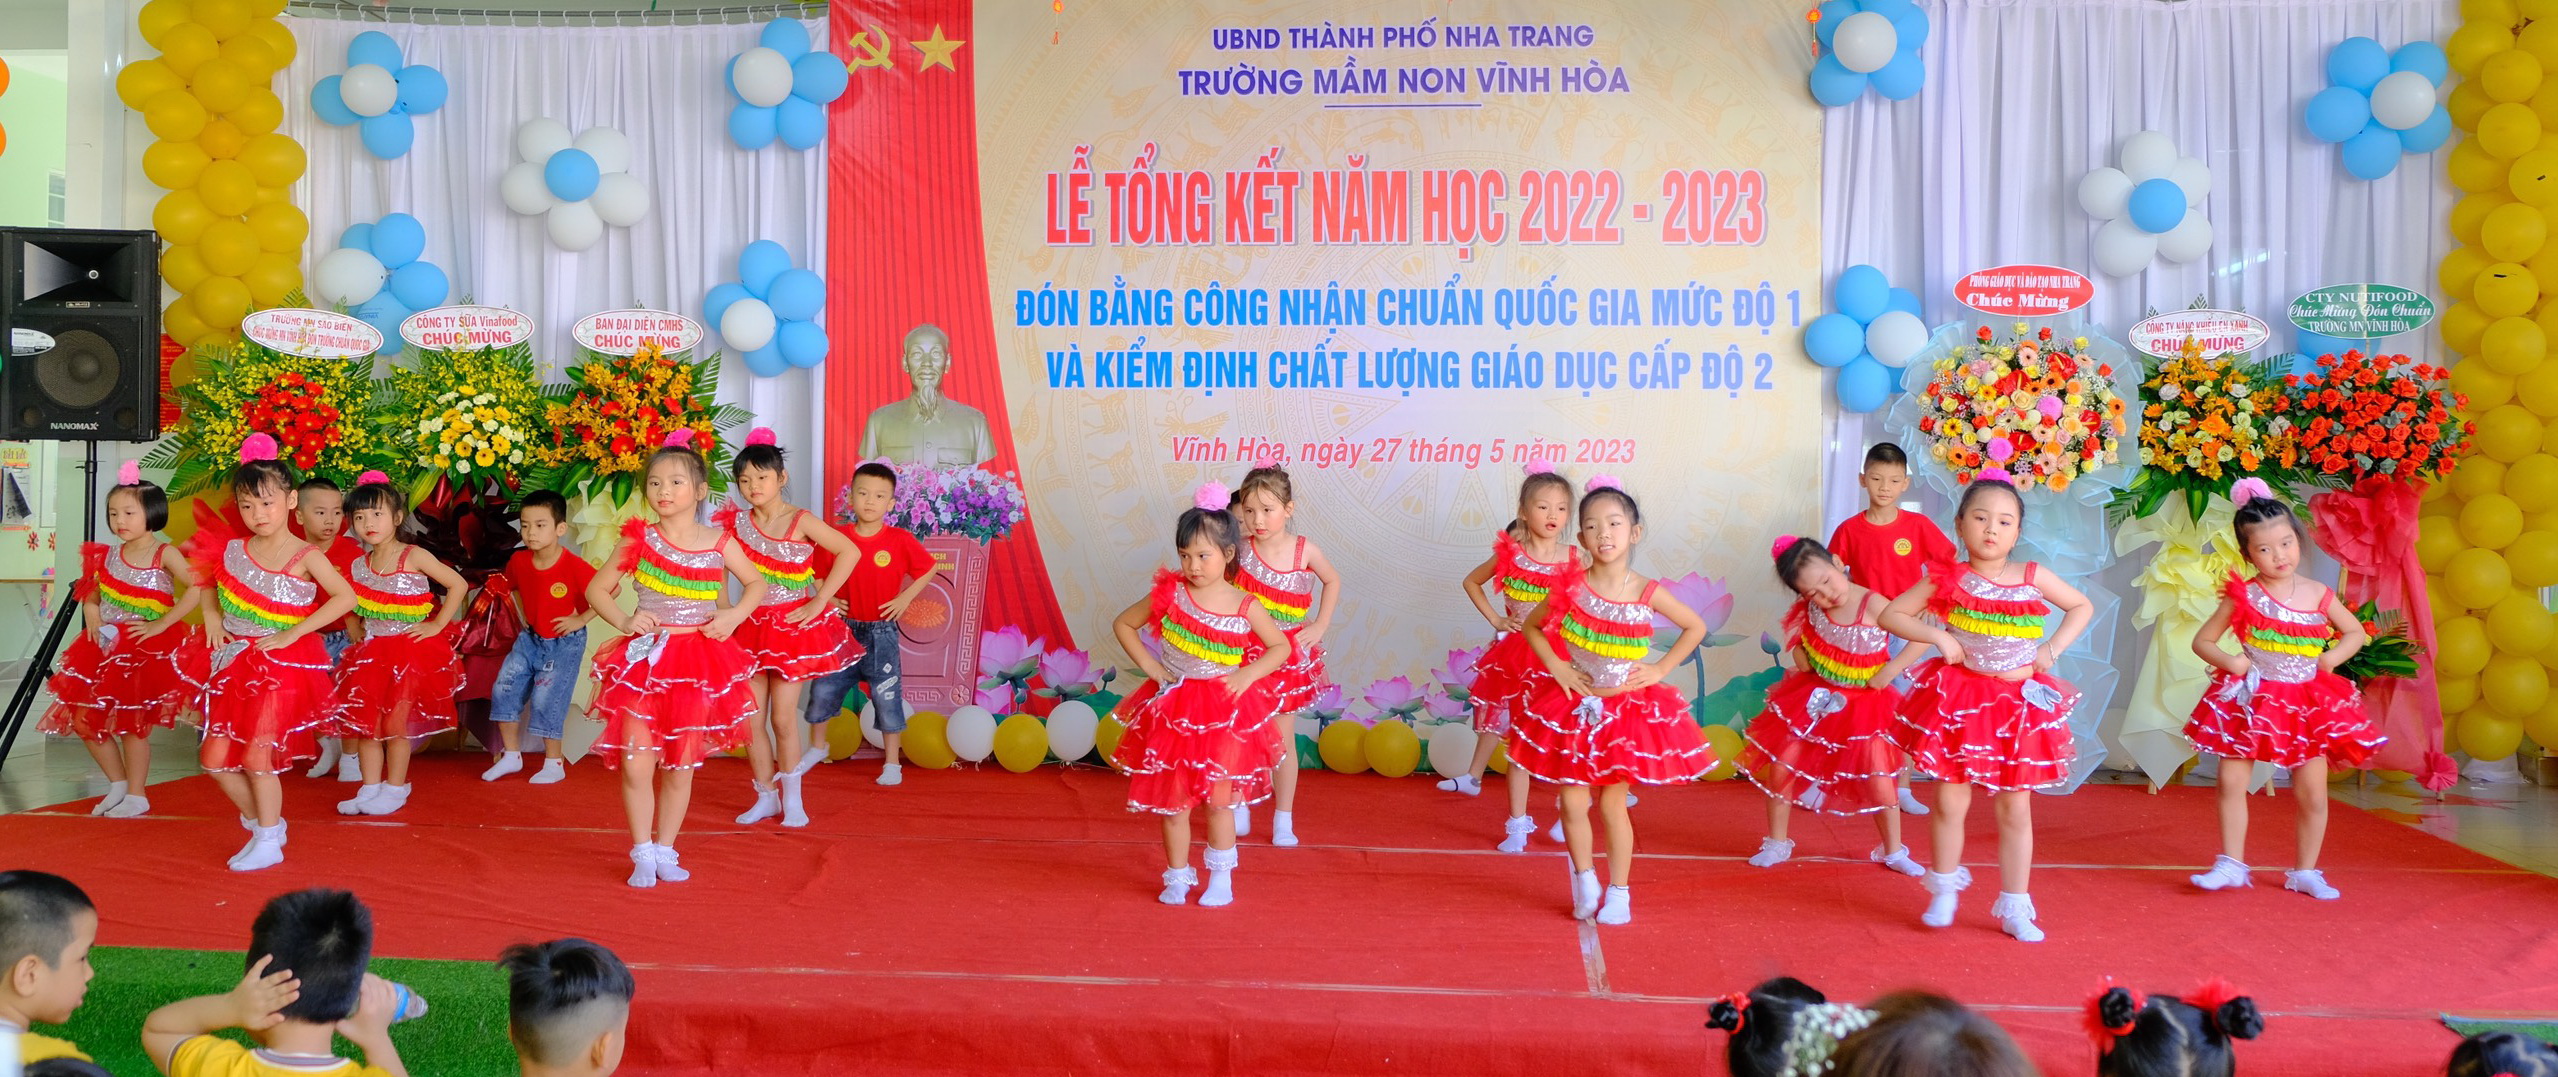 Hinh 0002- Le TK nam hoc 2023